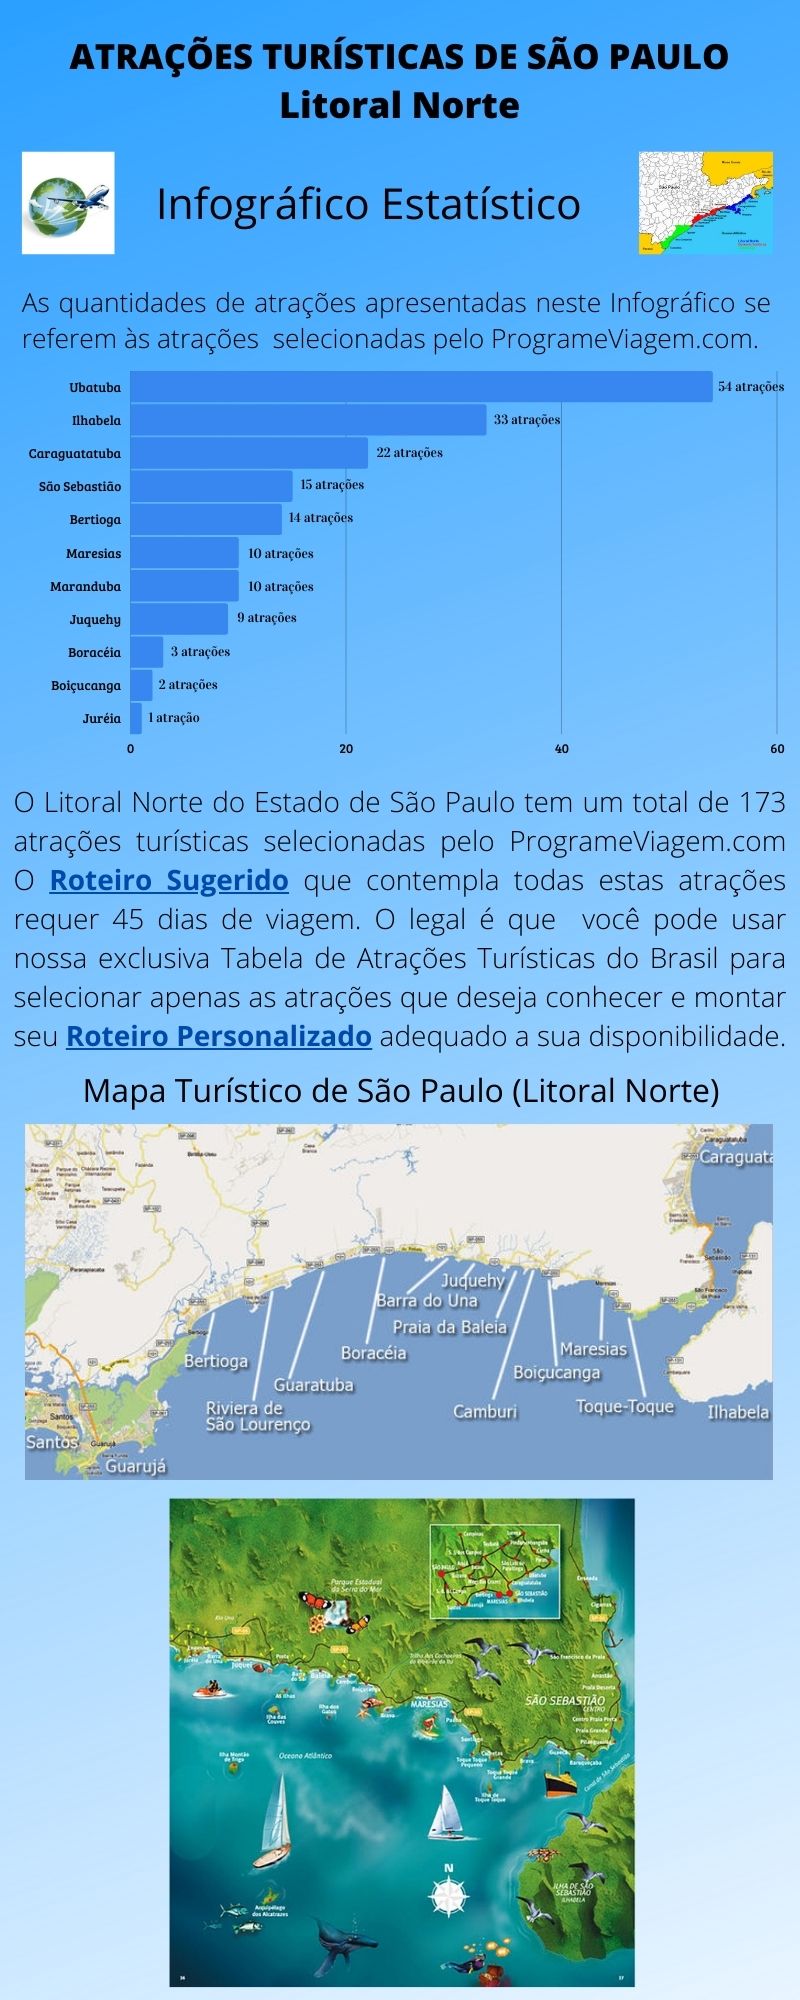 Infográfico Atrações Turísticas de São Paulo (Litoral Norte)